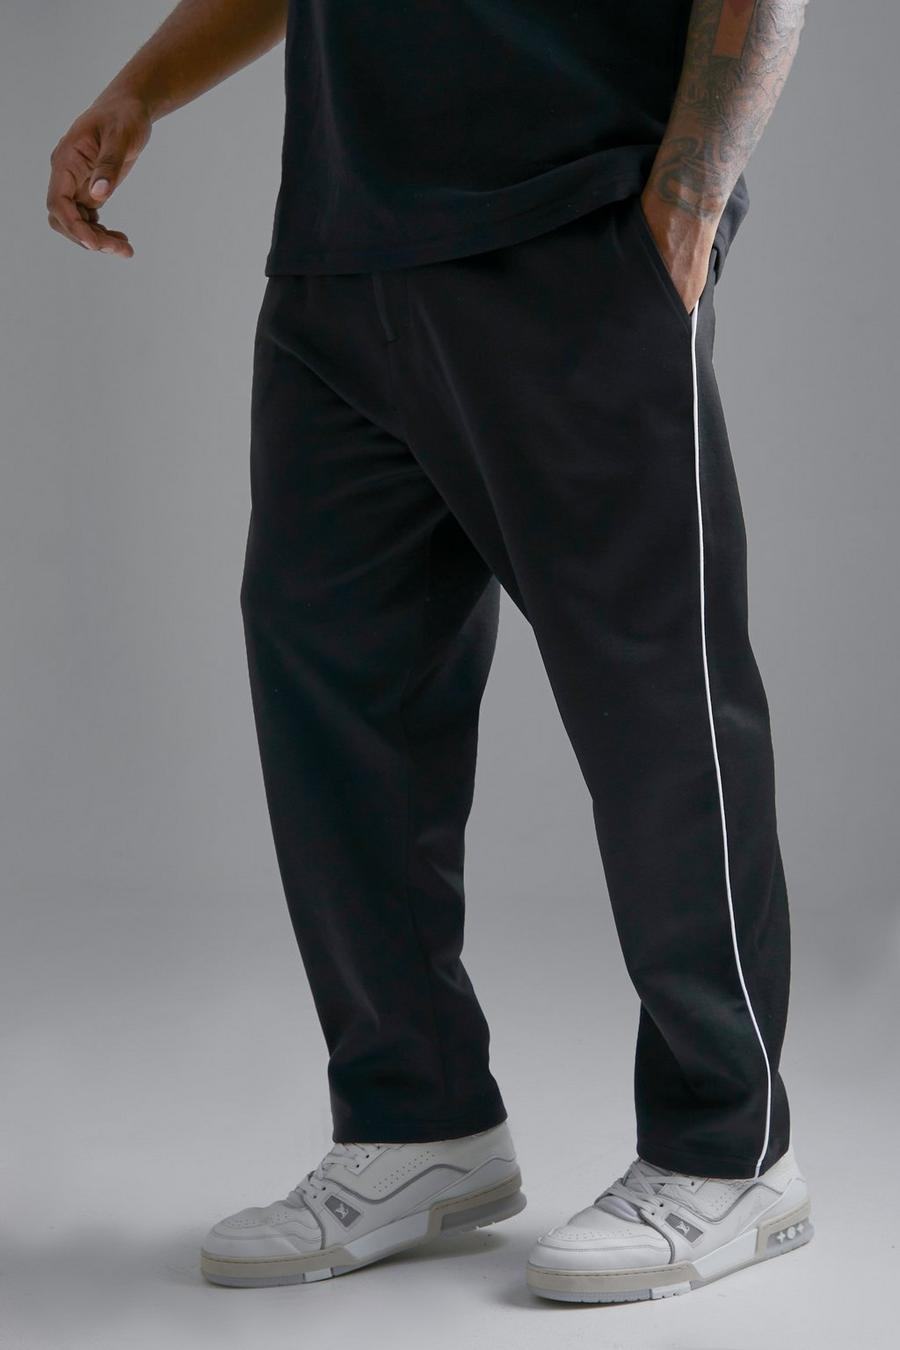 Pantaloni affusolati Plus Size con cordoncino, Black nero